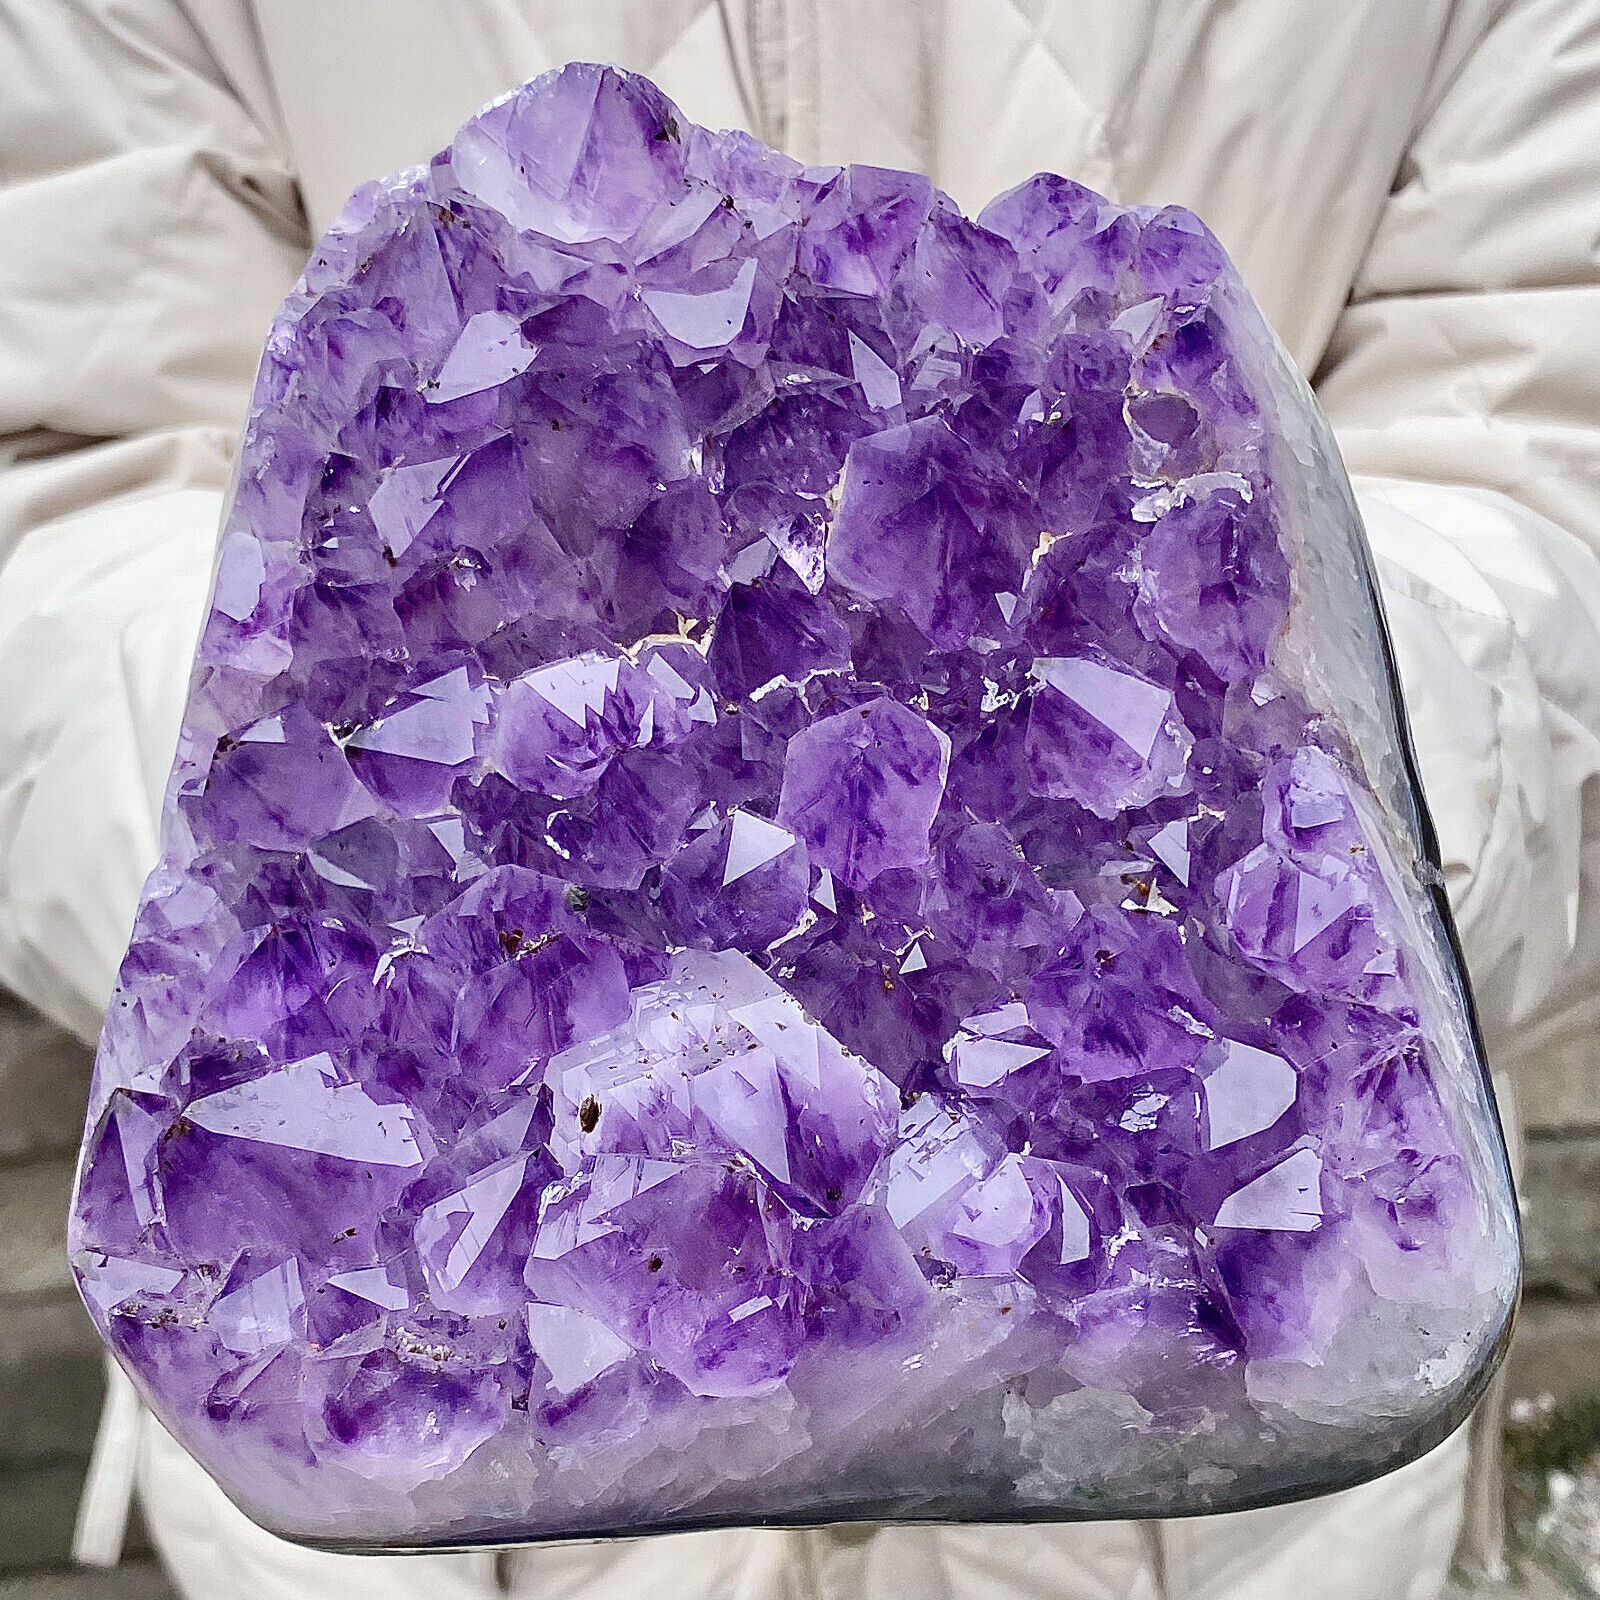 5.5LB Natural Amethyst geode quartz cluster crystal specimen energy healing